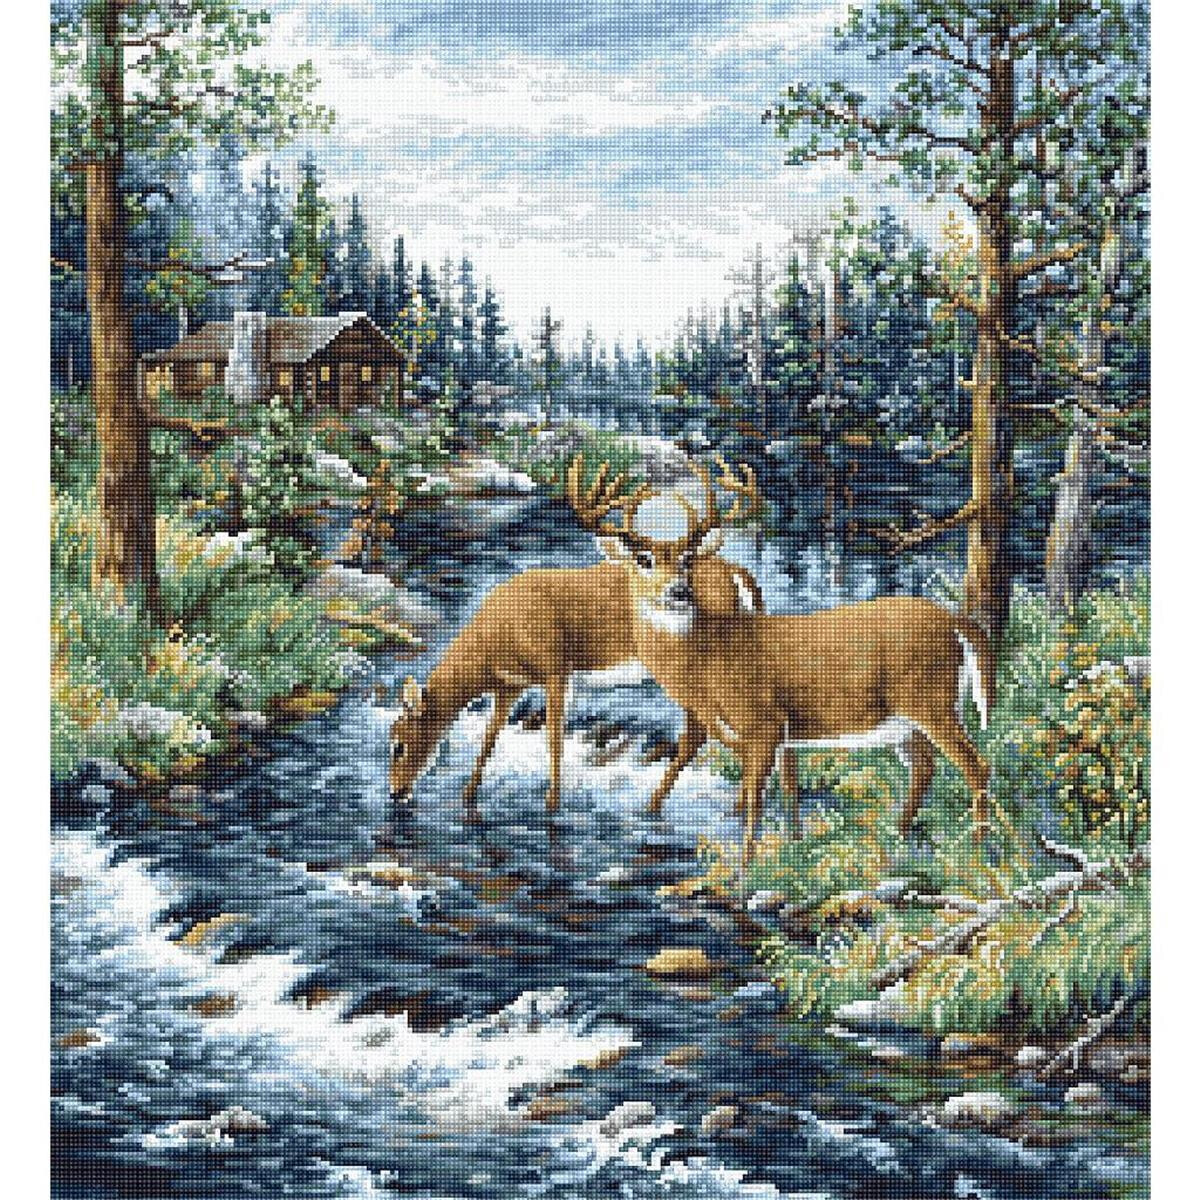 В спокойном лесу два оленя пьют воду из ручья. Олени...